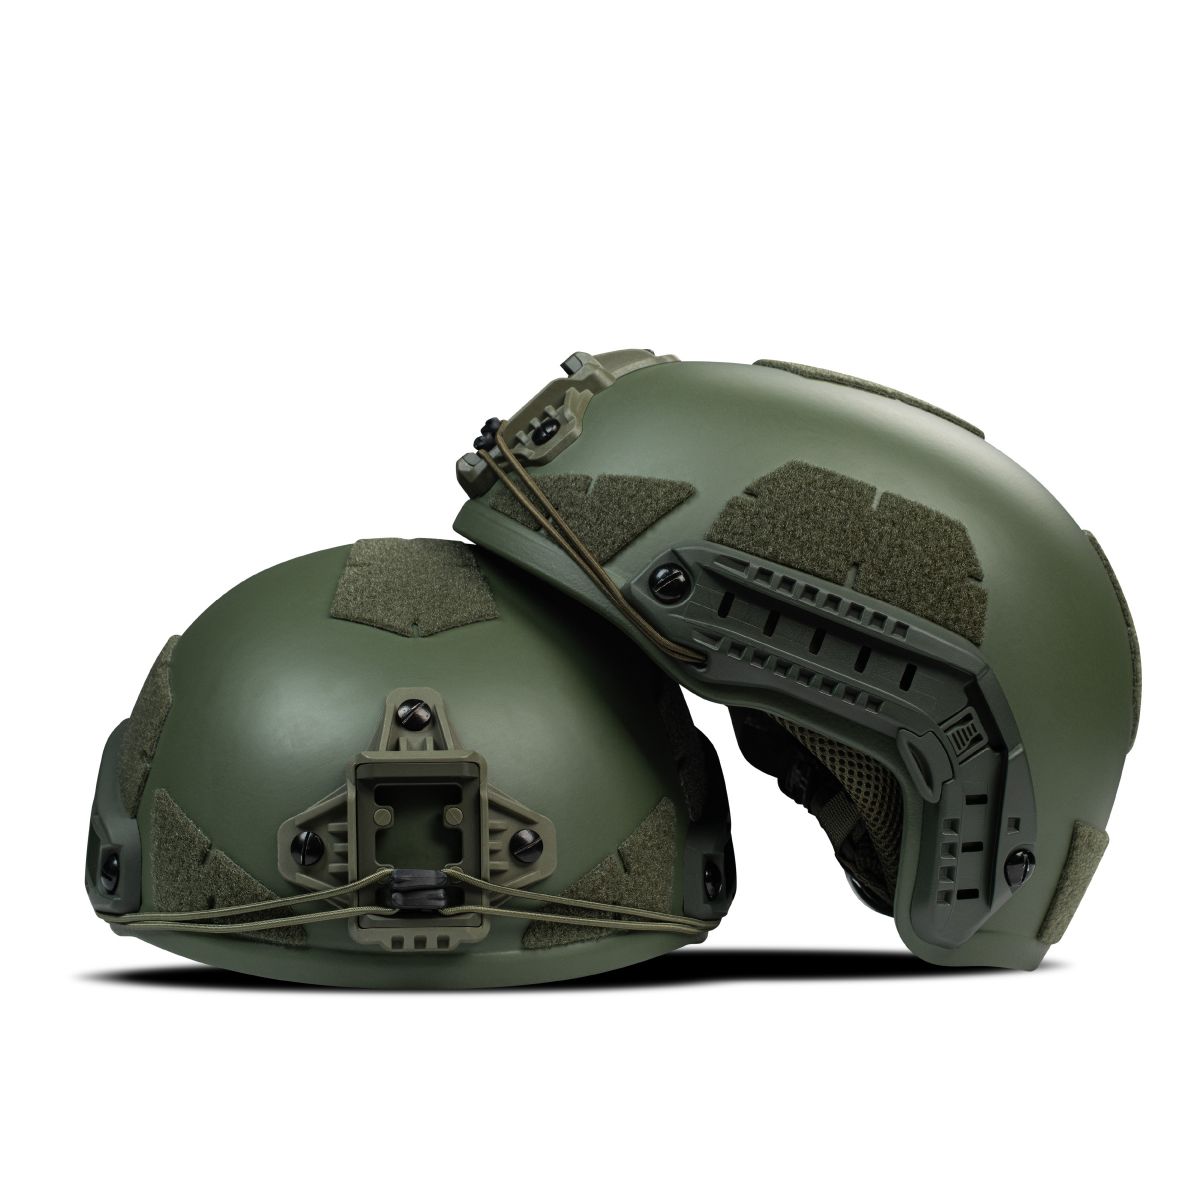 Кевларовый шлем TOR-D-VN (улучшенный). Производитель: Украина. Цвет Олива L 12